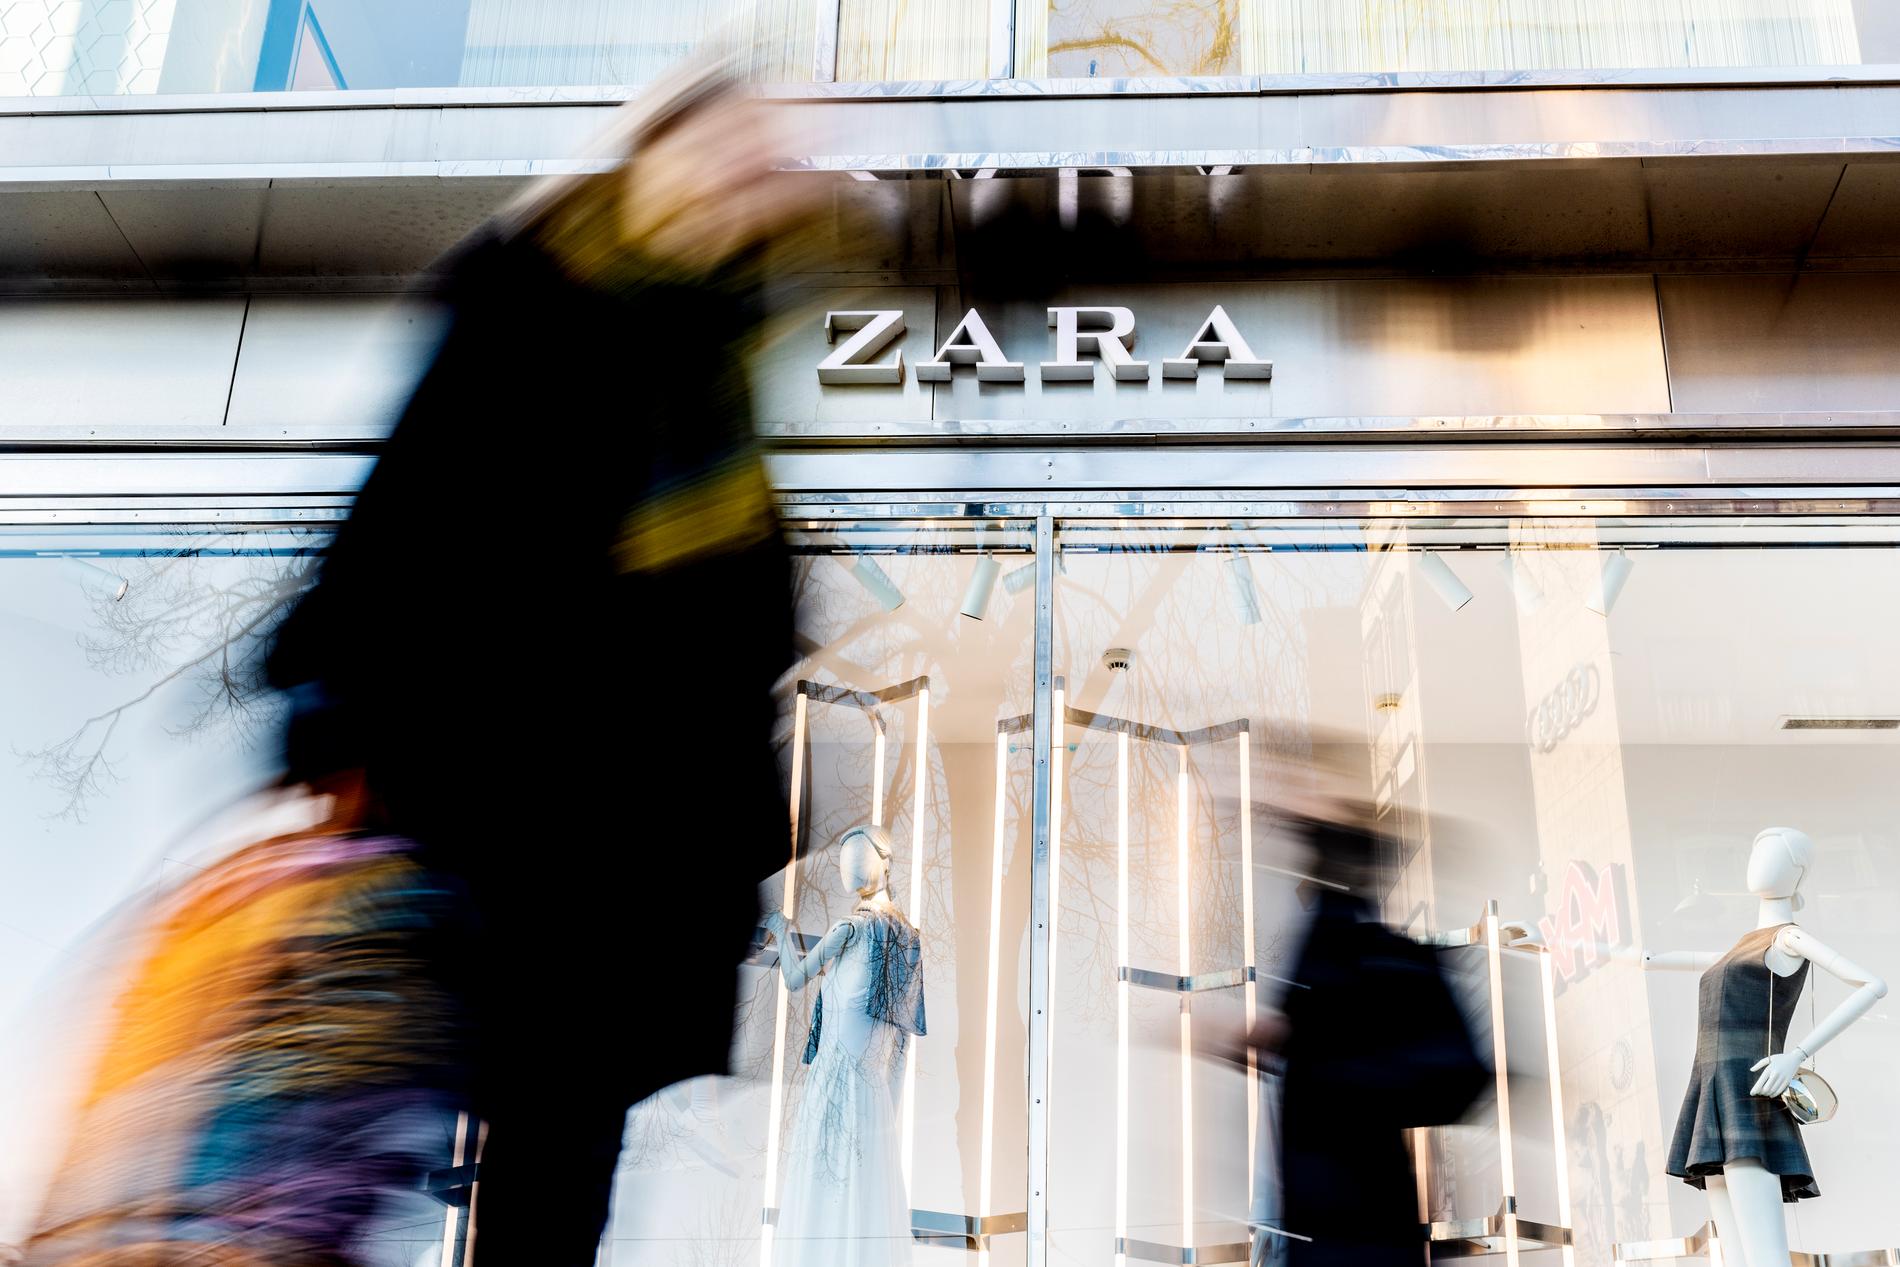 Zara has 13 stores in Sweden.